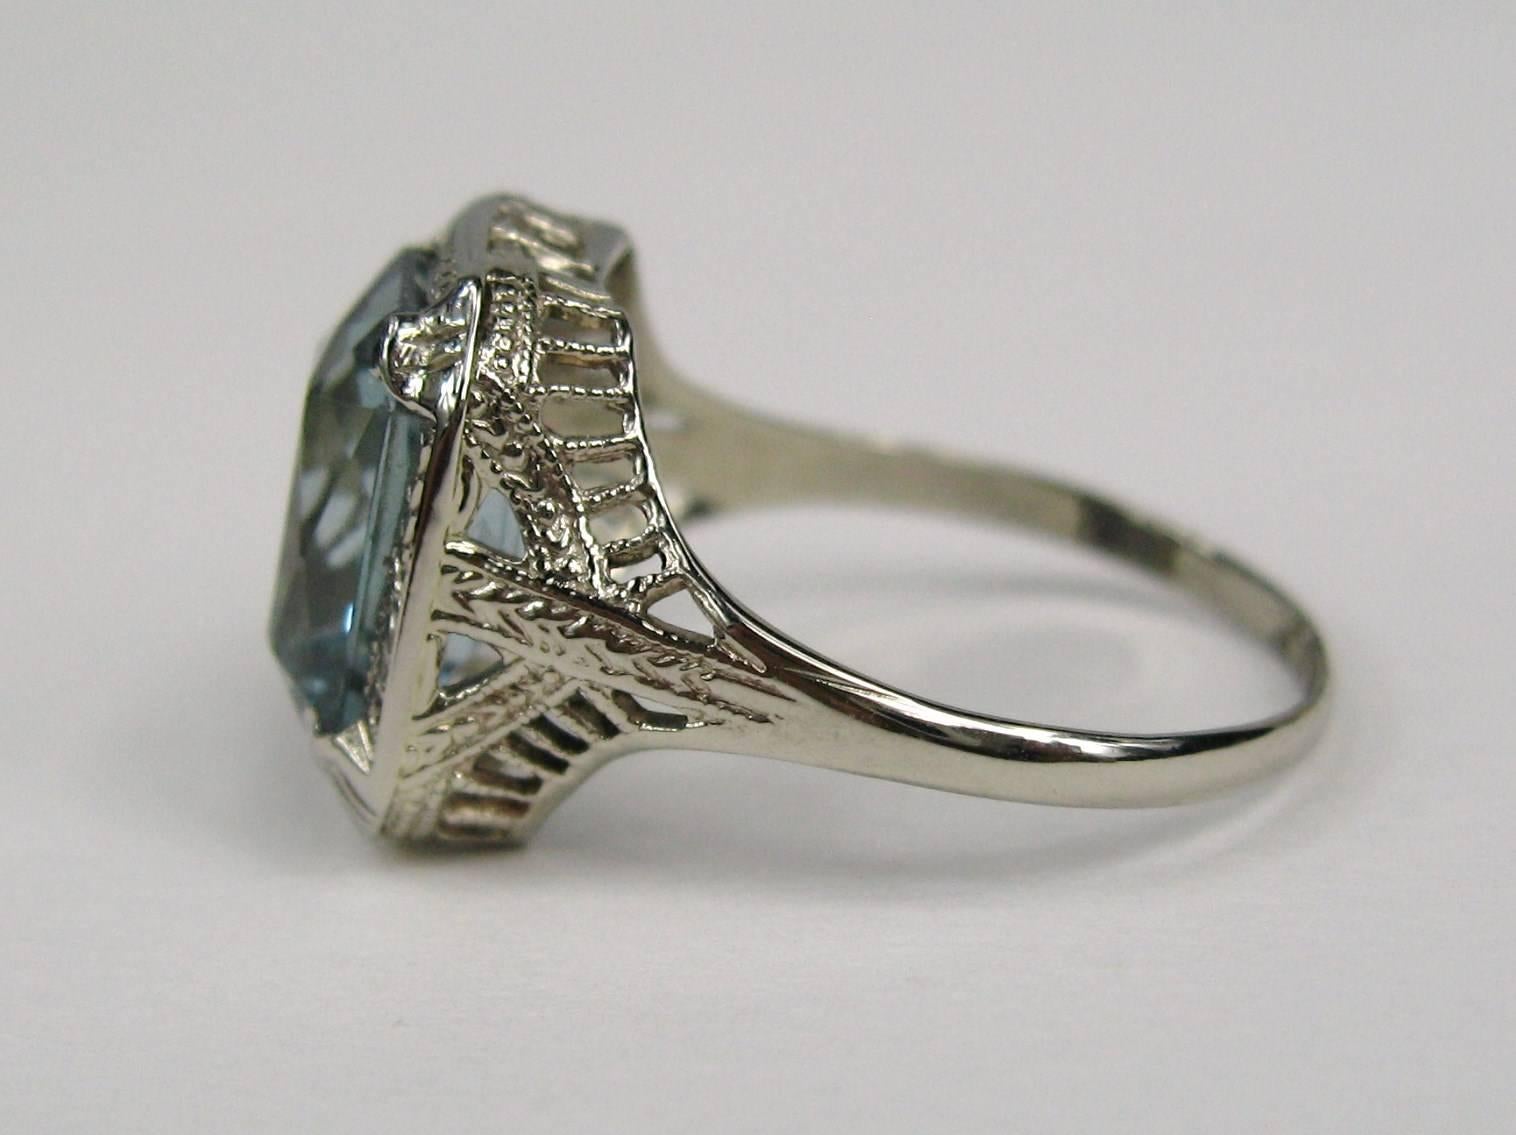 Schöner grünlich blauer synthetischer Spinell 14K Weißgold Ring. Der Stein hat eine achteckige Form mit modifiziertem Brillantschliff. Der Ring ist eine Größe 6 und kann von uns oder Ihrem Juwelier größer oder kleiner gemacht werden. Top des Rings